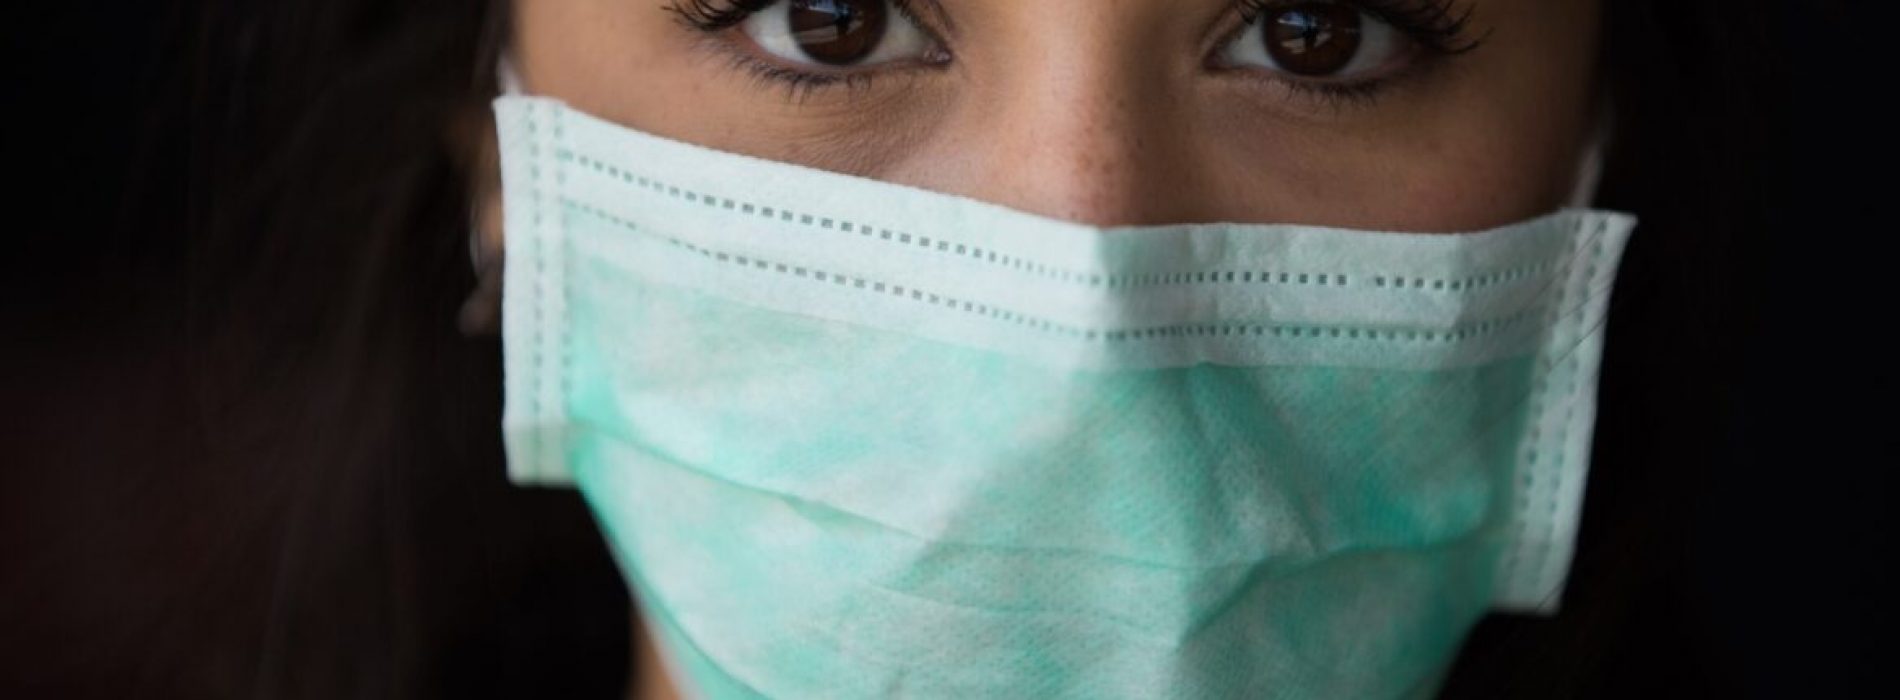 Nieuwe CDC- en WHO-studie bewijst ‘geen bewijs’ dat gezichtsmaskers virus besmetting voorkomen